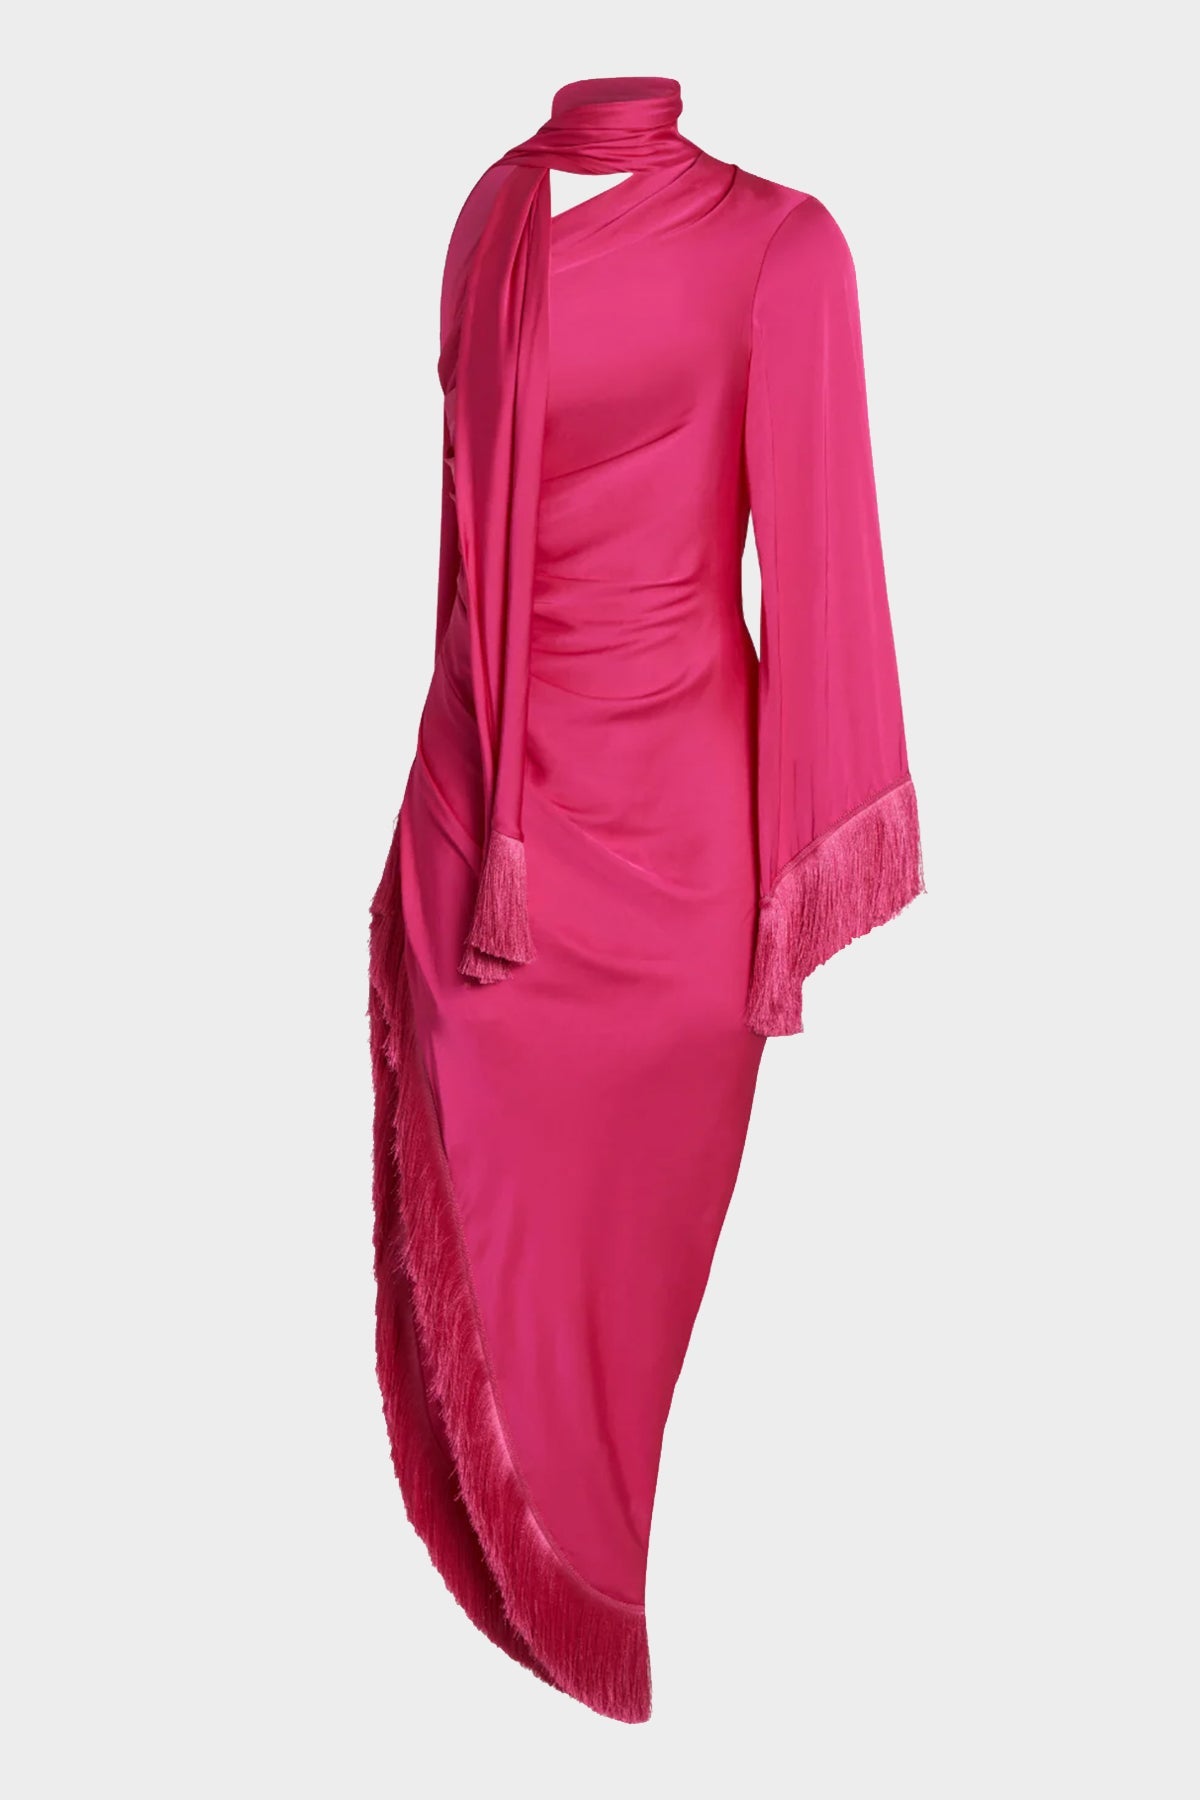 Fringe Trim Oscar Dress in Hot Pink - shop-olivia.com